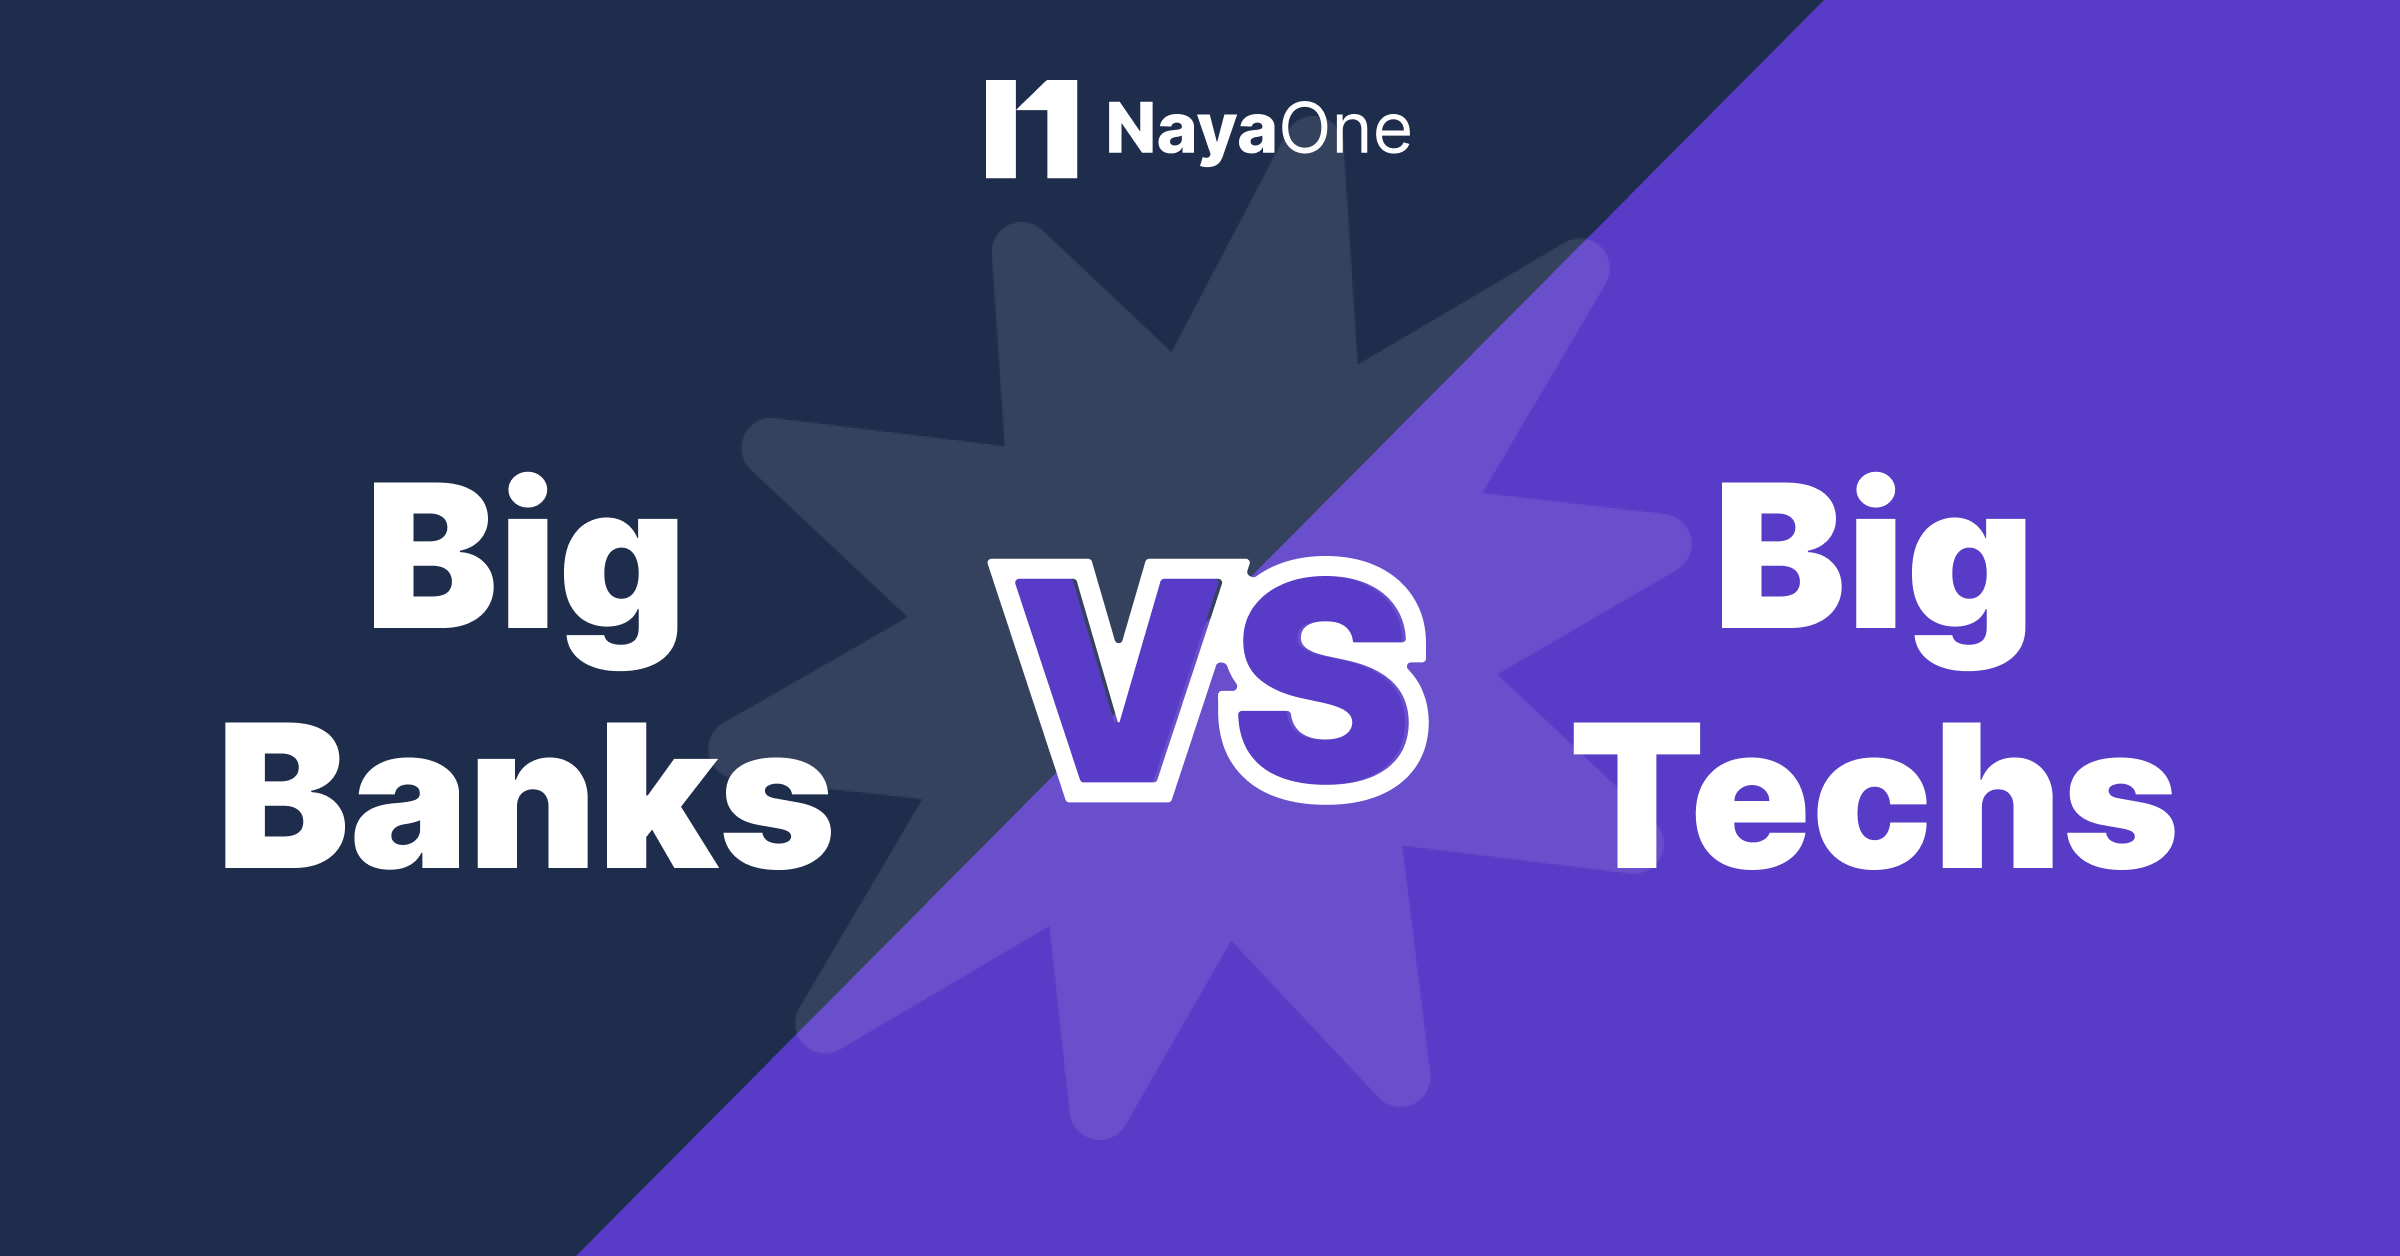 Big Banks vs Big Techs